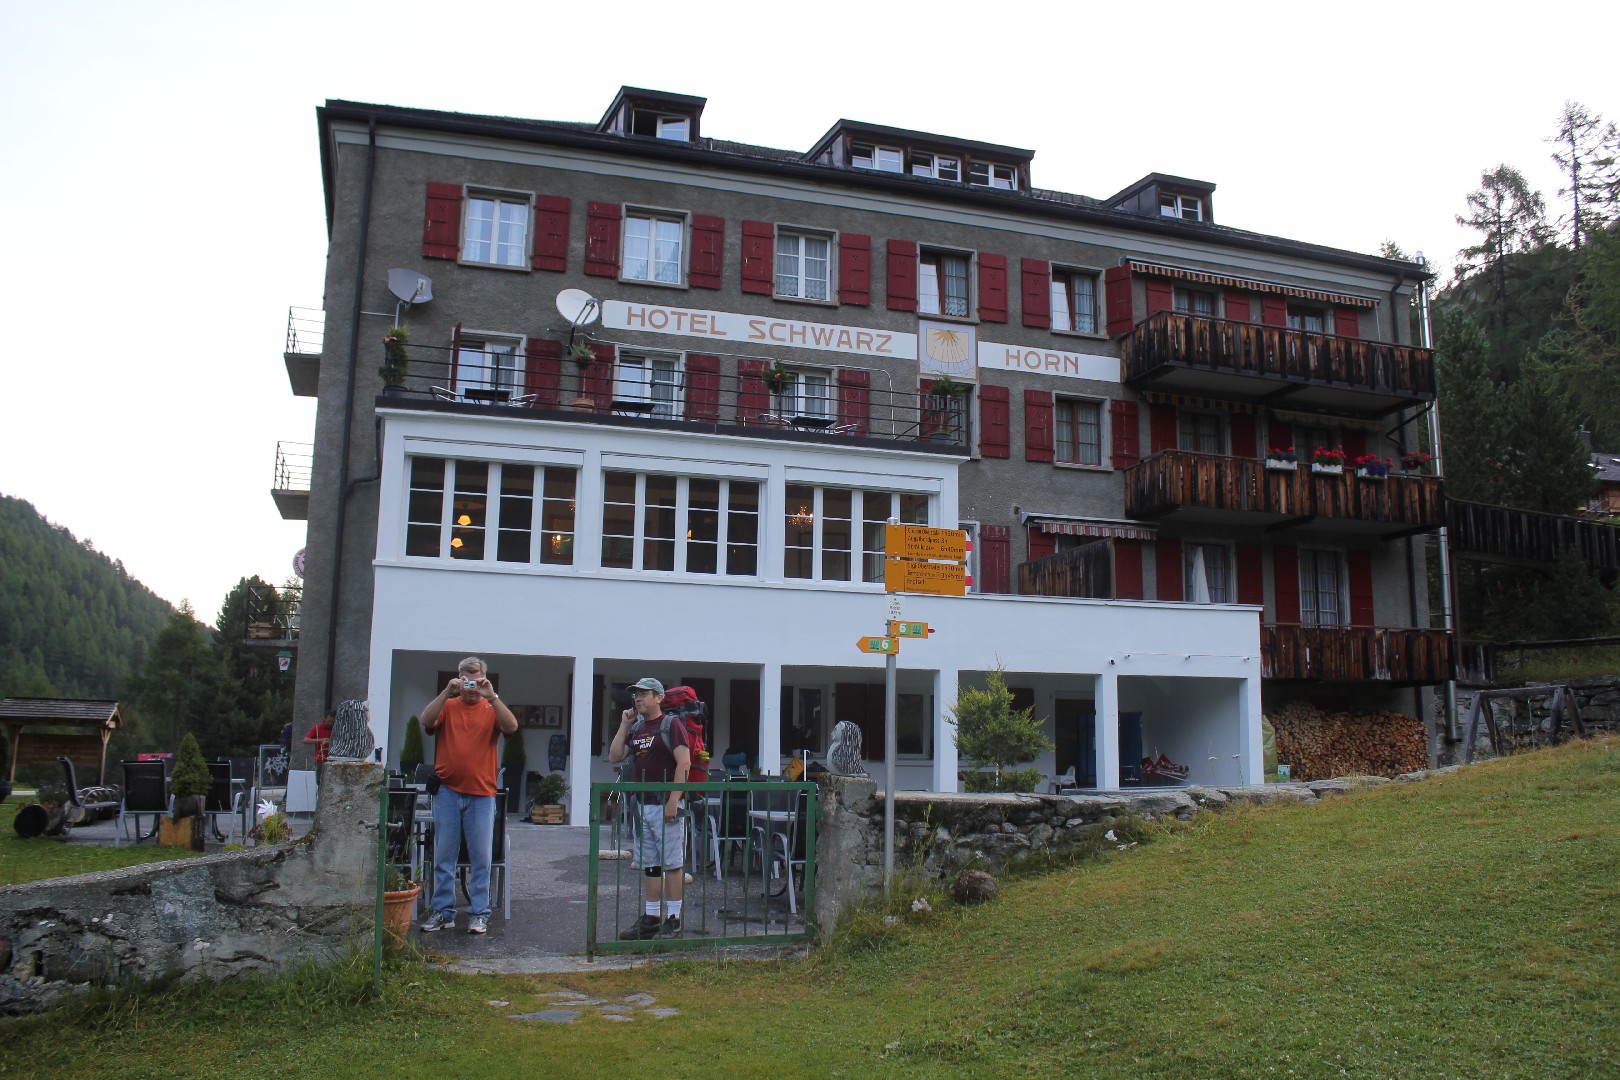 Hotel Schwarzhorn, Gruben, Switzerland